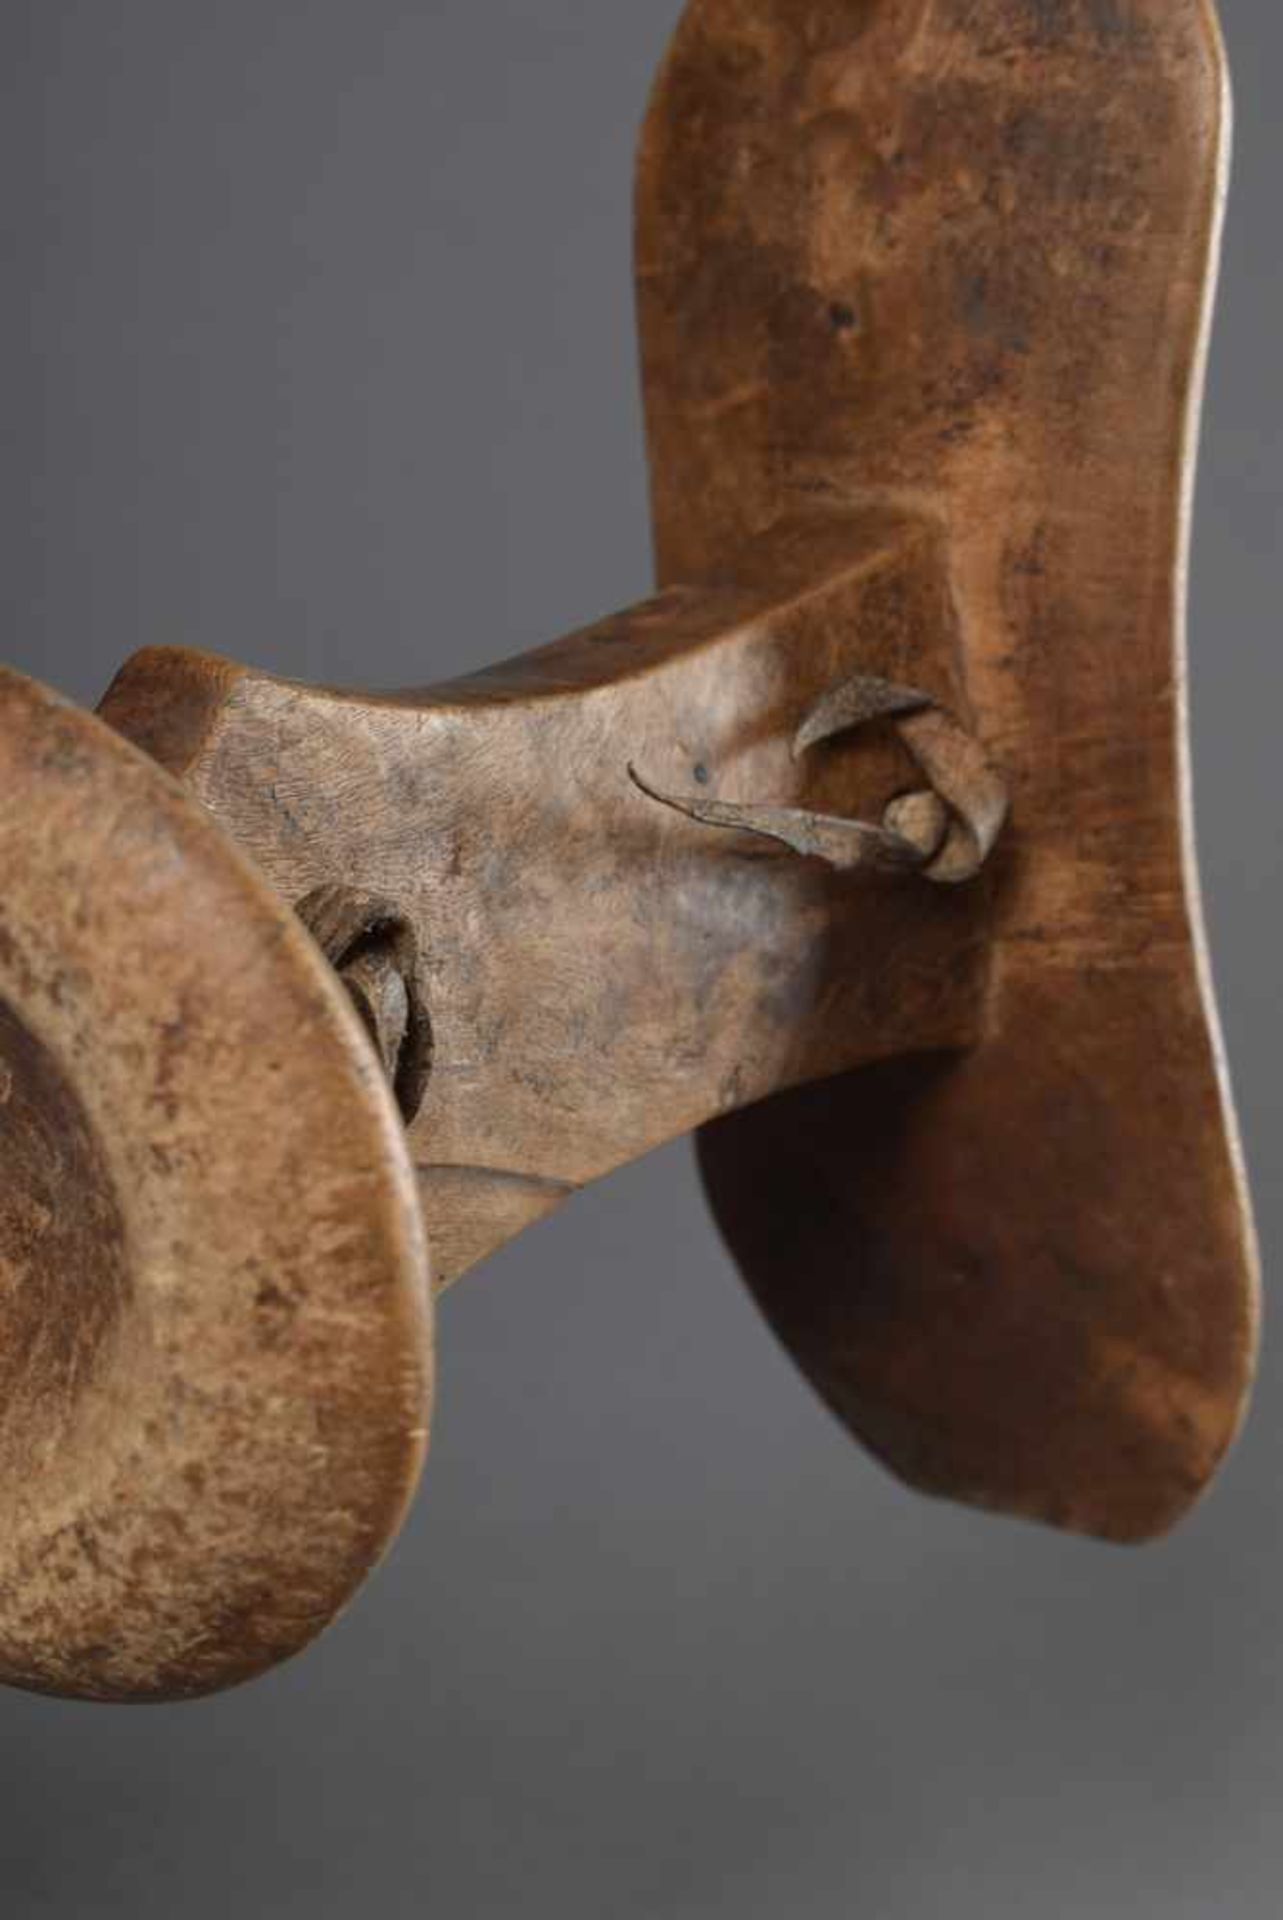 2 Diverse Teile: Afrikanische Marimba und Kopfstütze, Holz/Leder/Metall, 30x11x4cm, H. 19cm, - Bild 3 aus 3